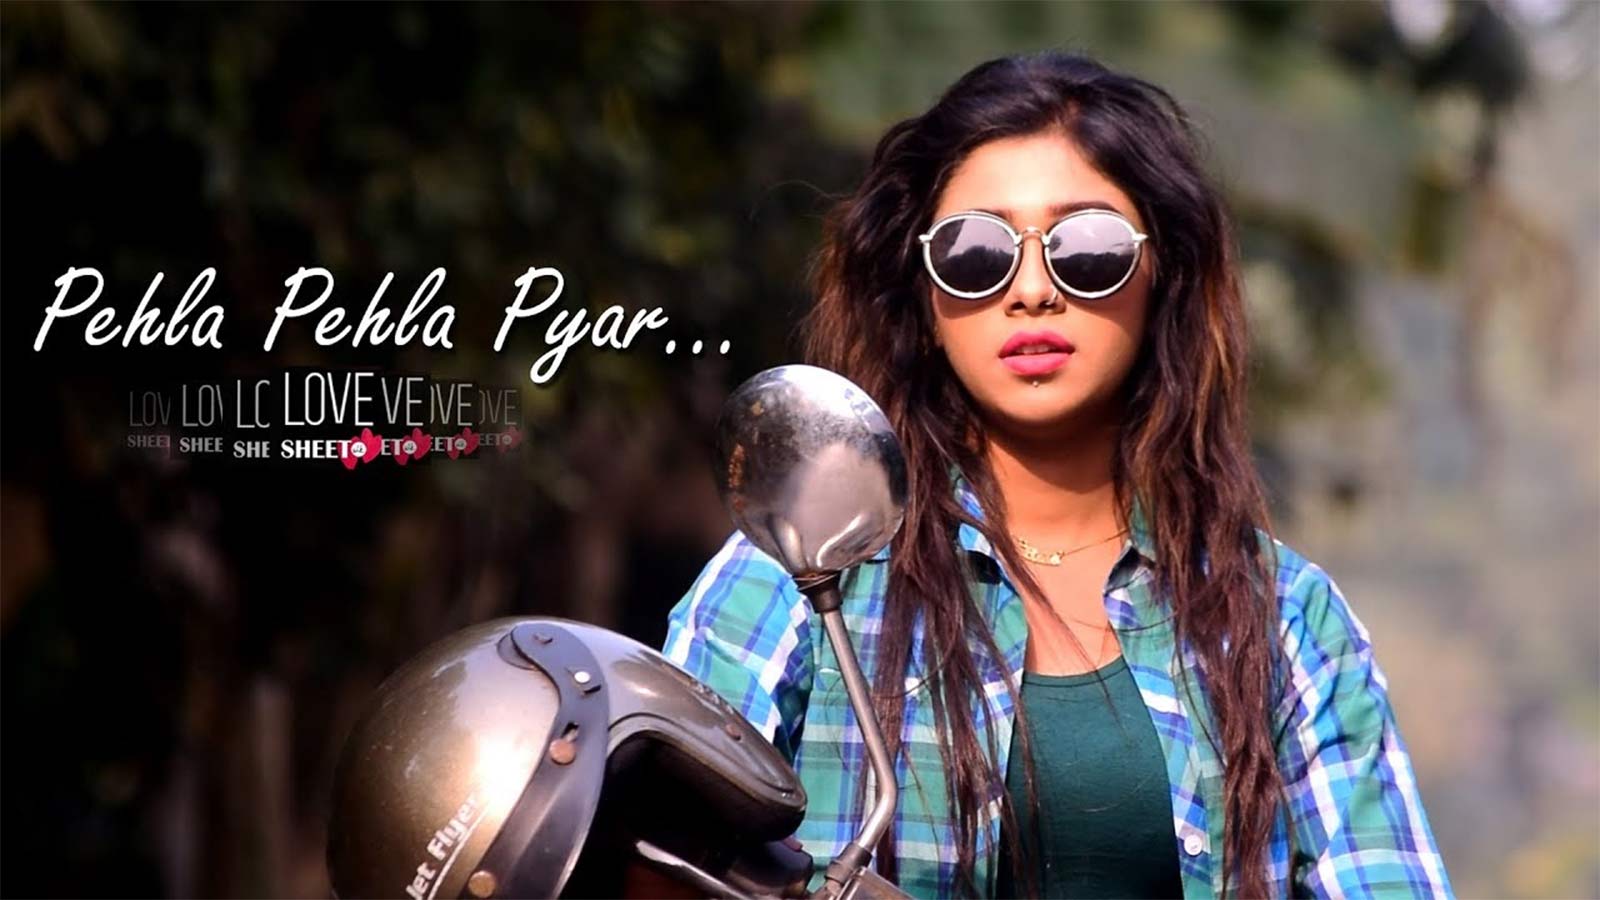 Hindi Song 'Pehli Dafa' Sung By Babay Kumar. Hindi Video Songs of India